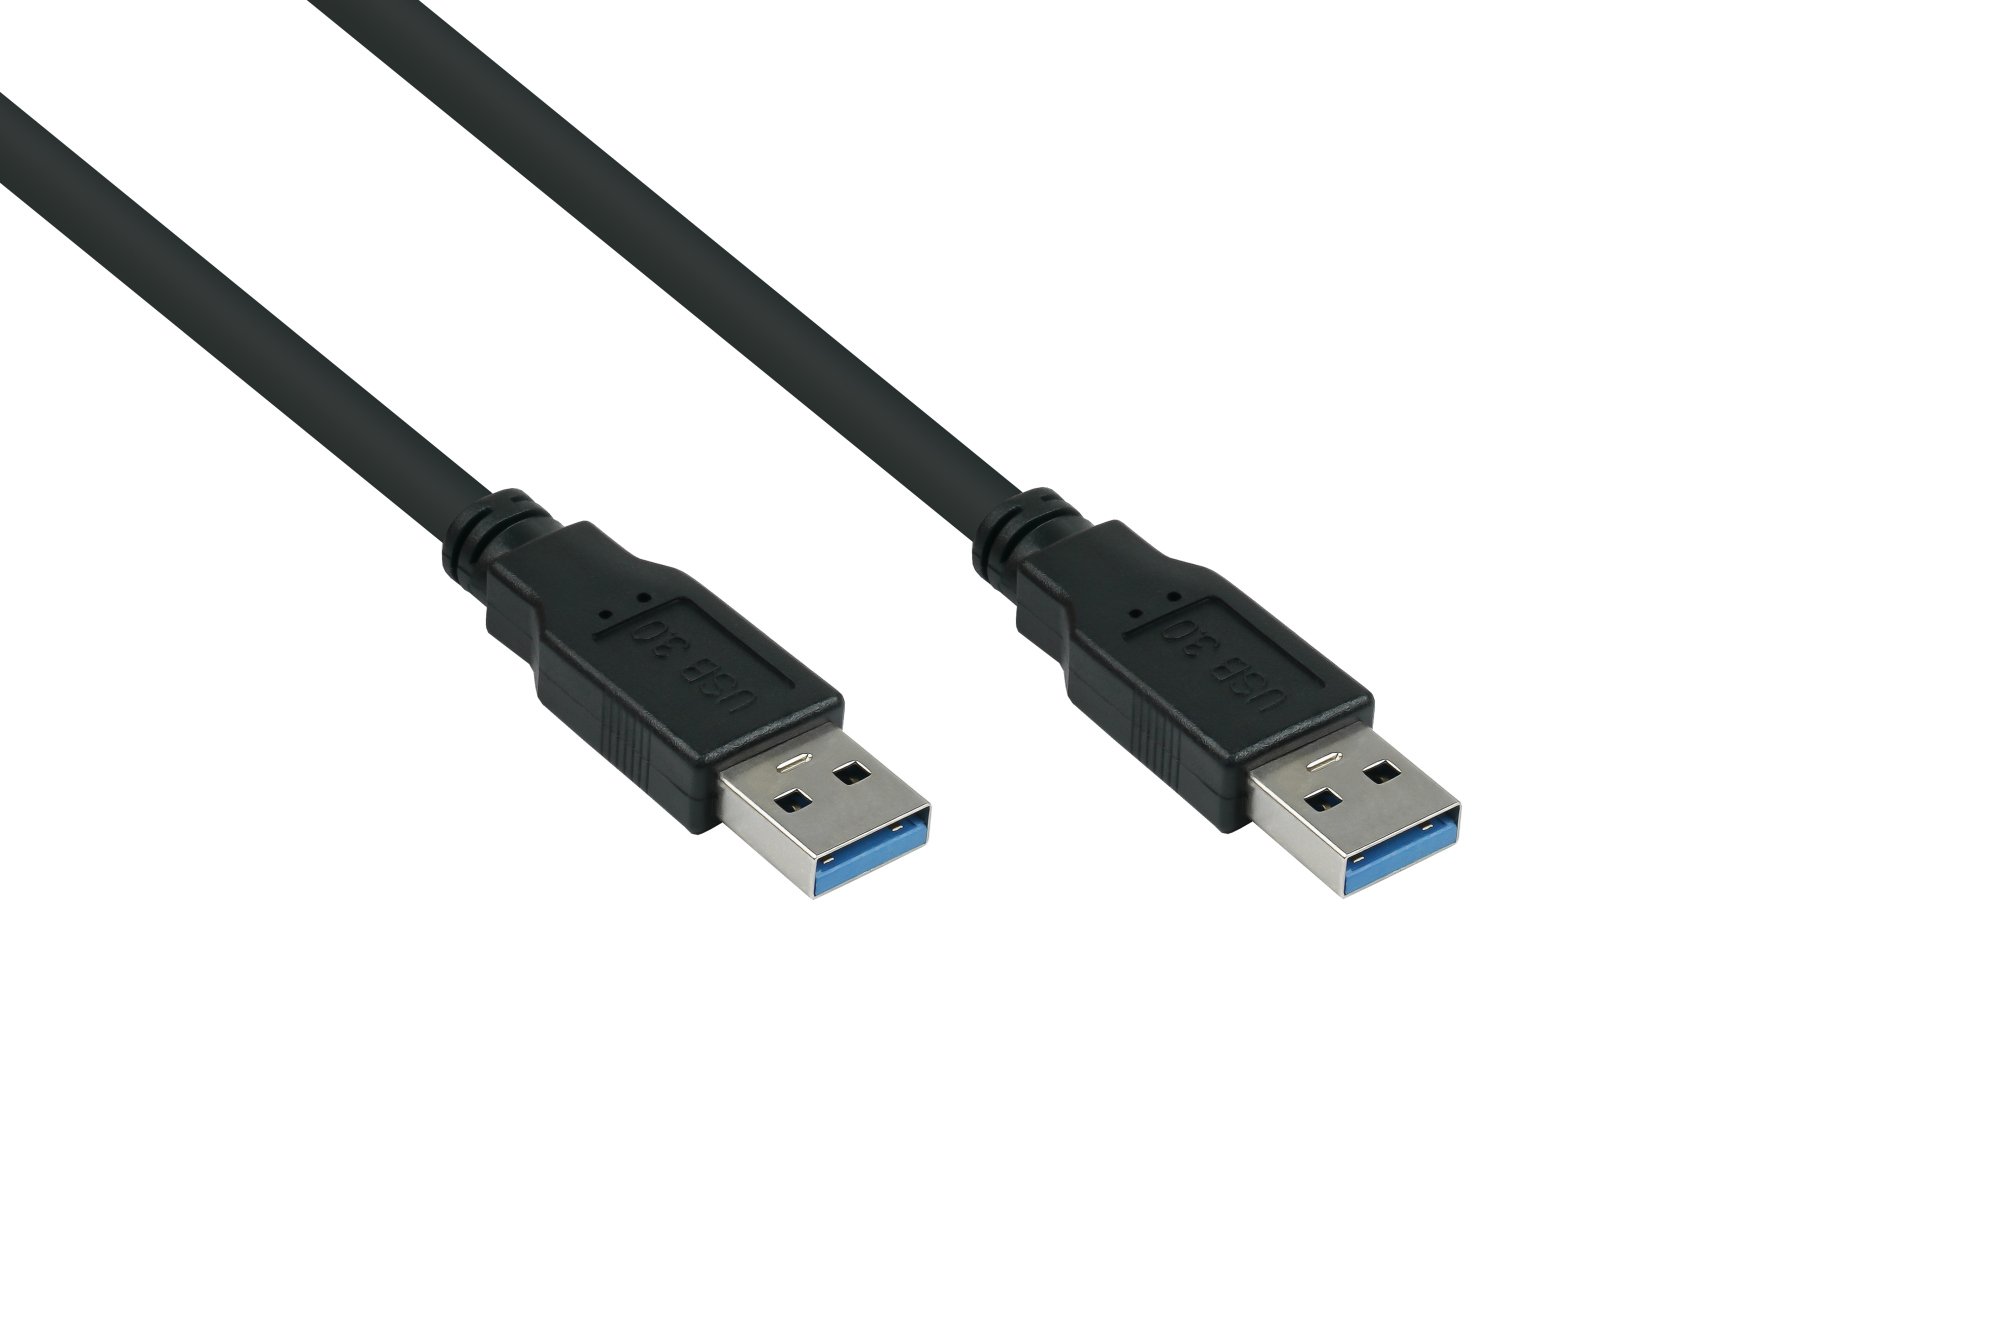 USB 3.0 Kabel Stecker A an Stecker A, Premium, AWG28 / AWG24, UL, KUPFER, schwarz, 3m